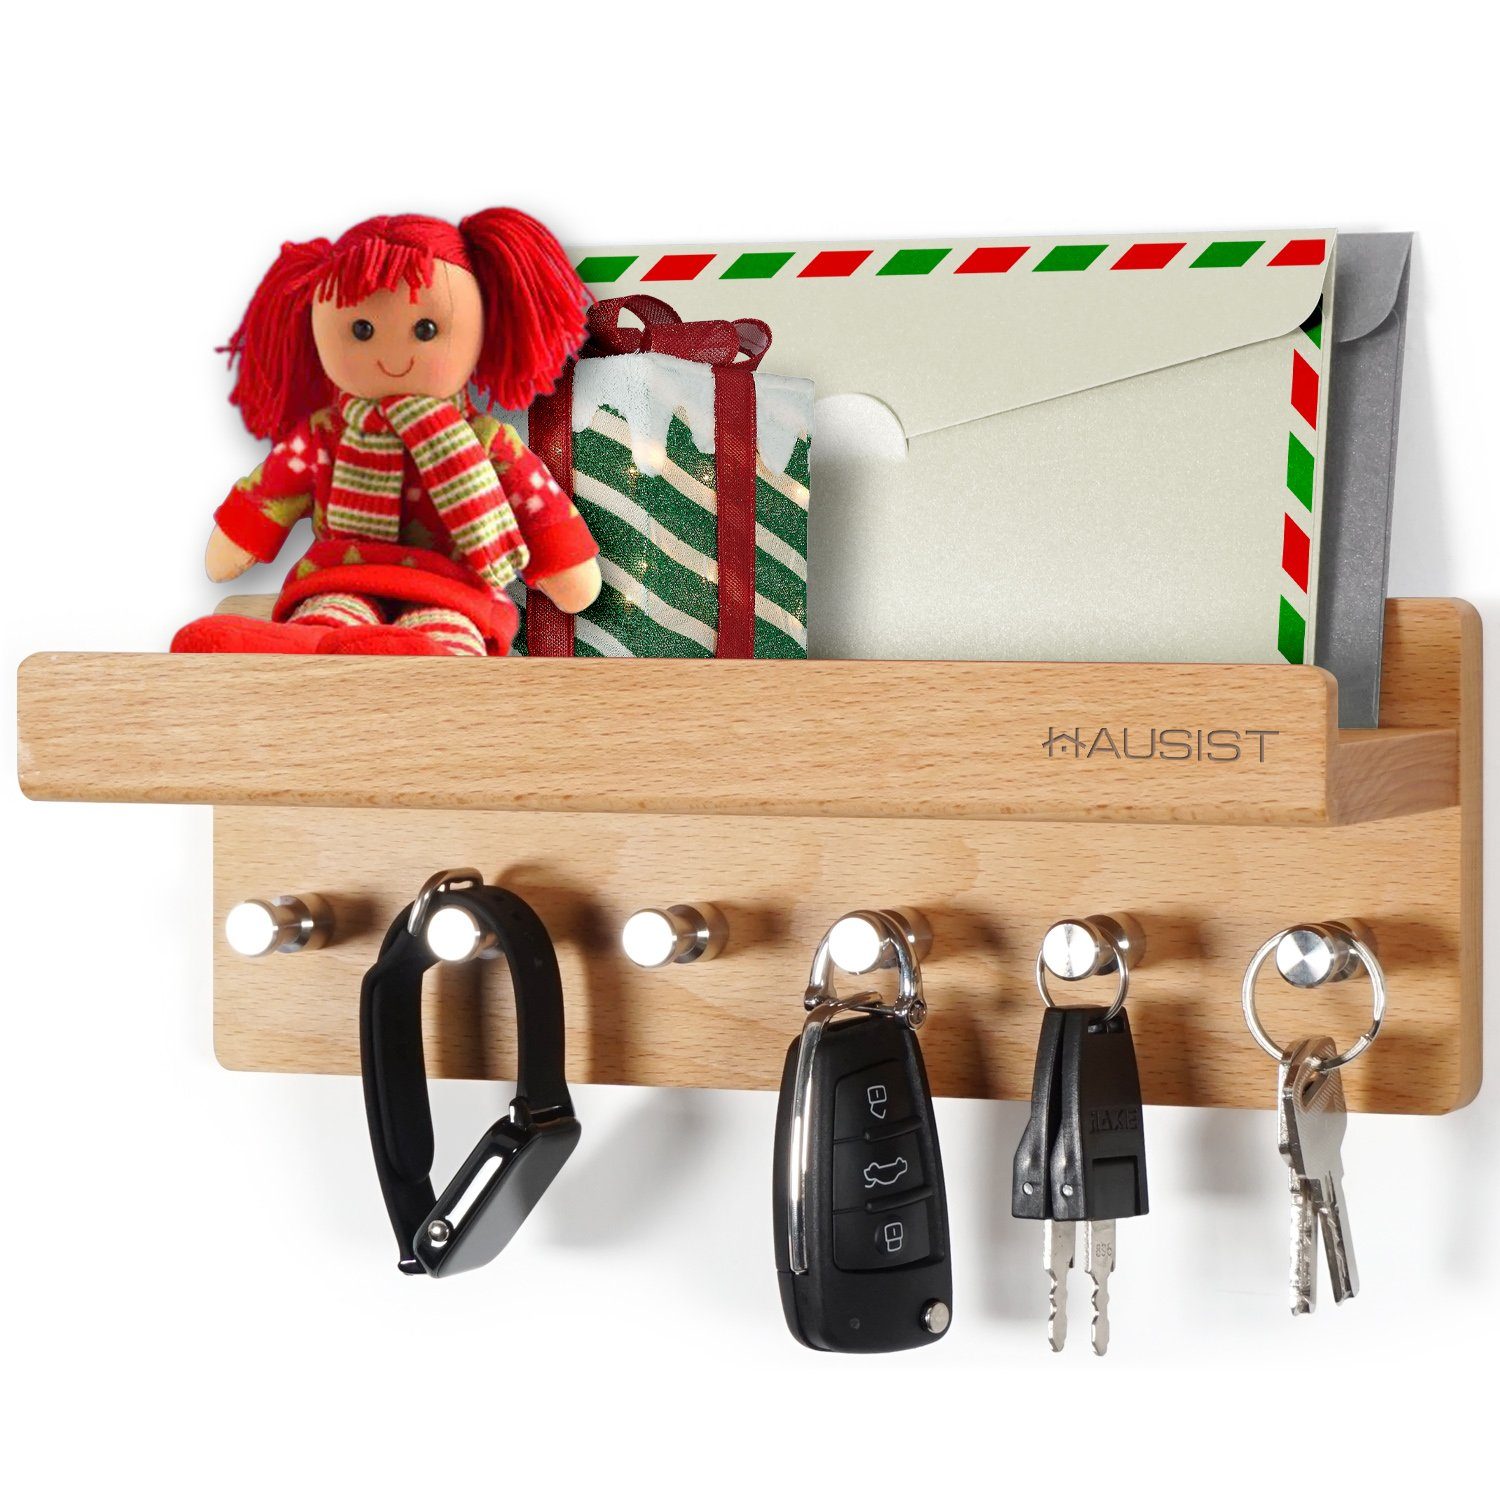 mit Holz Weihnachtsgeschenk Ablage Schlüsselbrett aus Edelstahlhaken, mit Edelstahlhaken, Holz HAUSIST 6 schlüsselkasten Schlüsselbrett mit